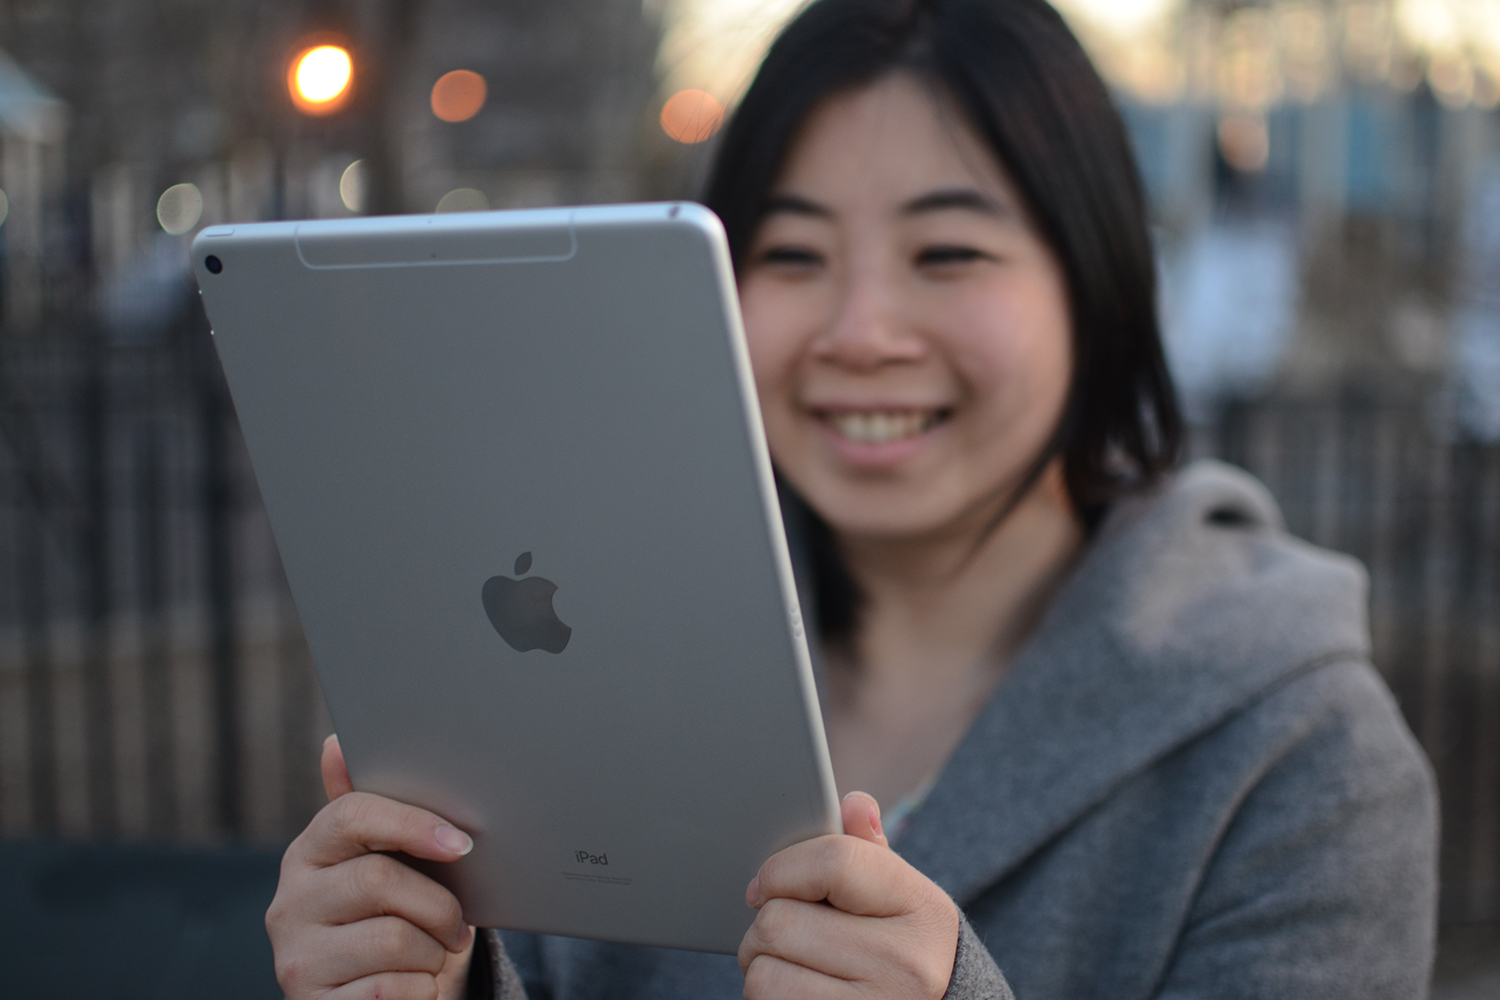 Apple iPad Air (3rd Gen) - 2019 Dimensions & Drawings